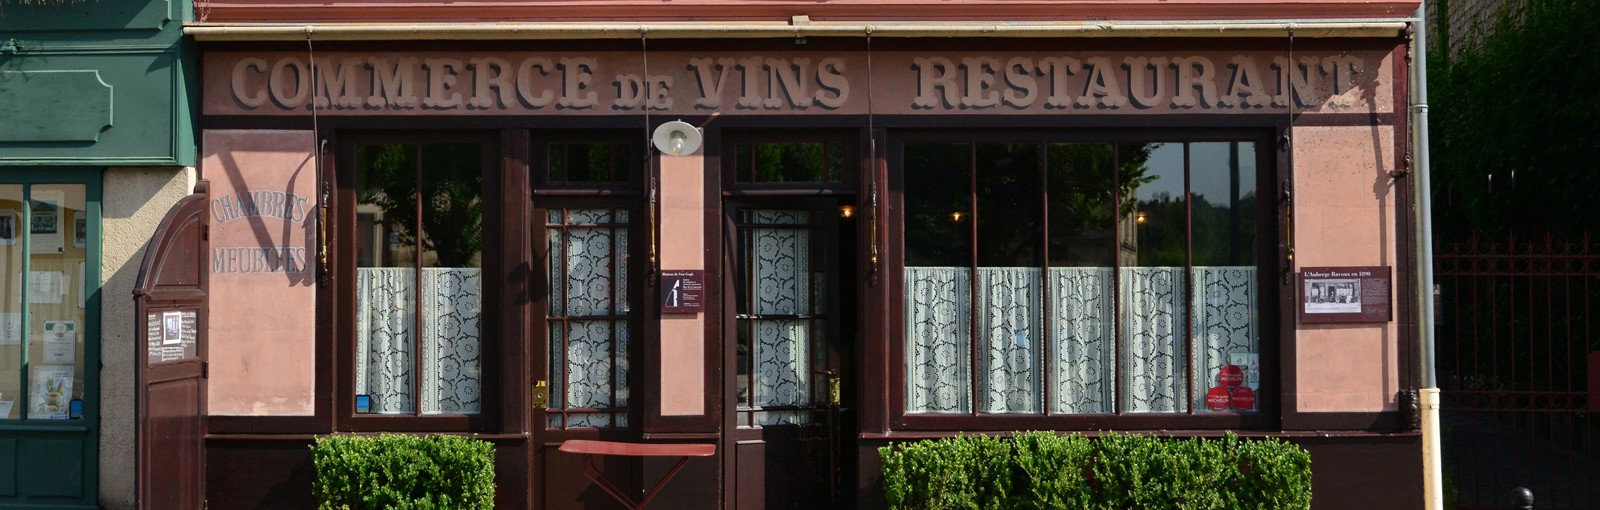 Tours Giverny y Auvers-sur-Oise - Días completos - Excursiones desde París